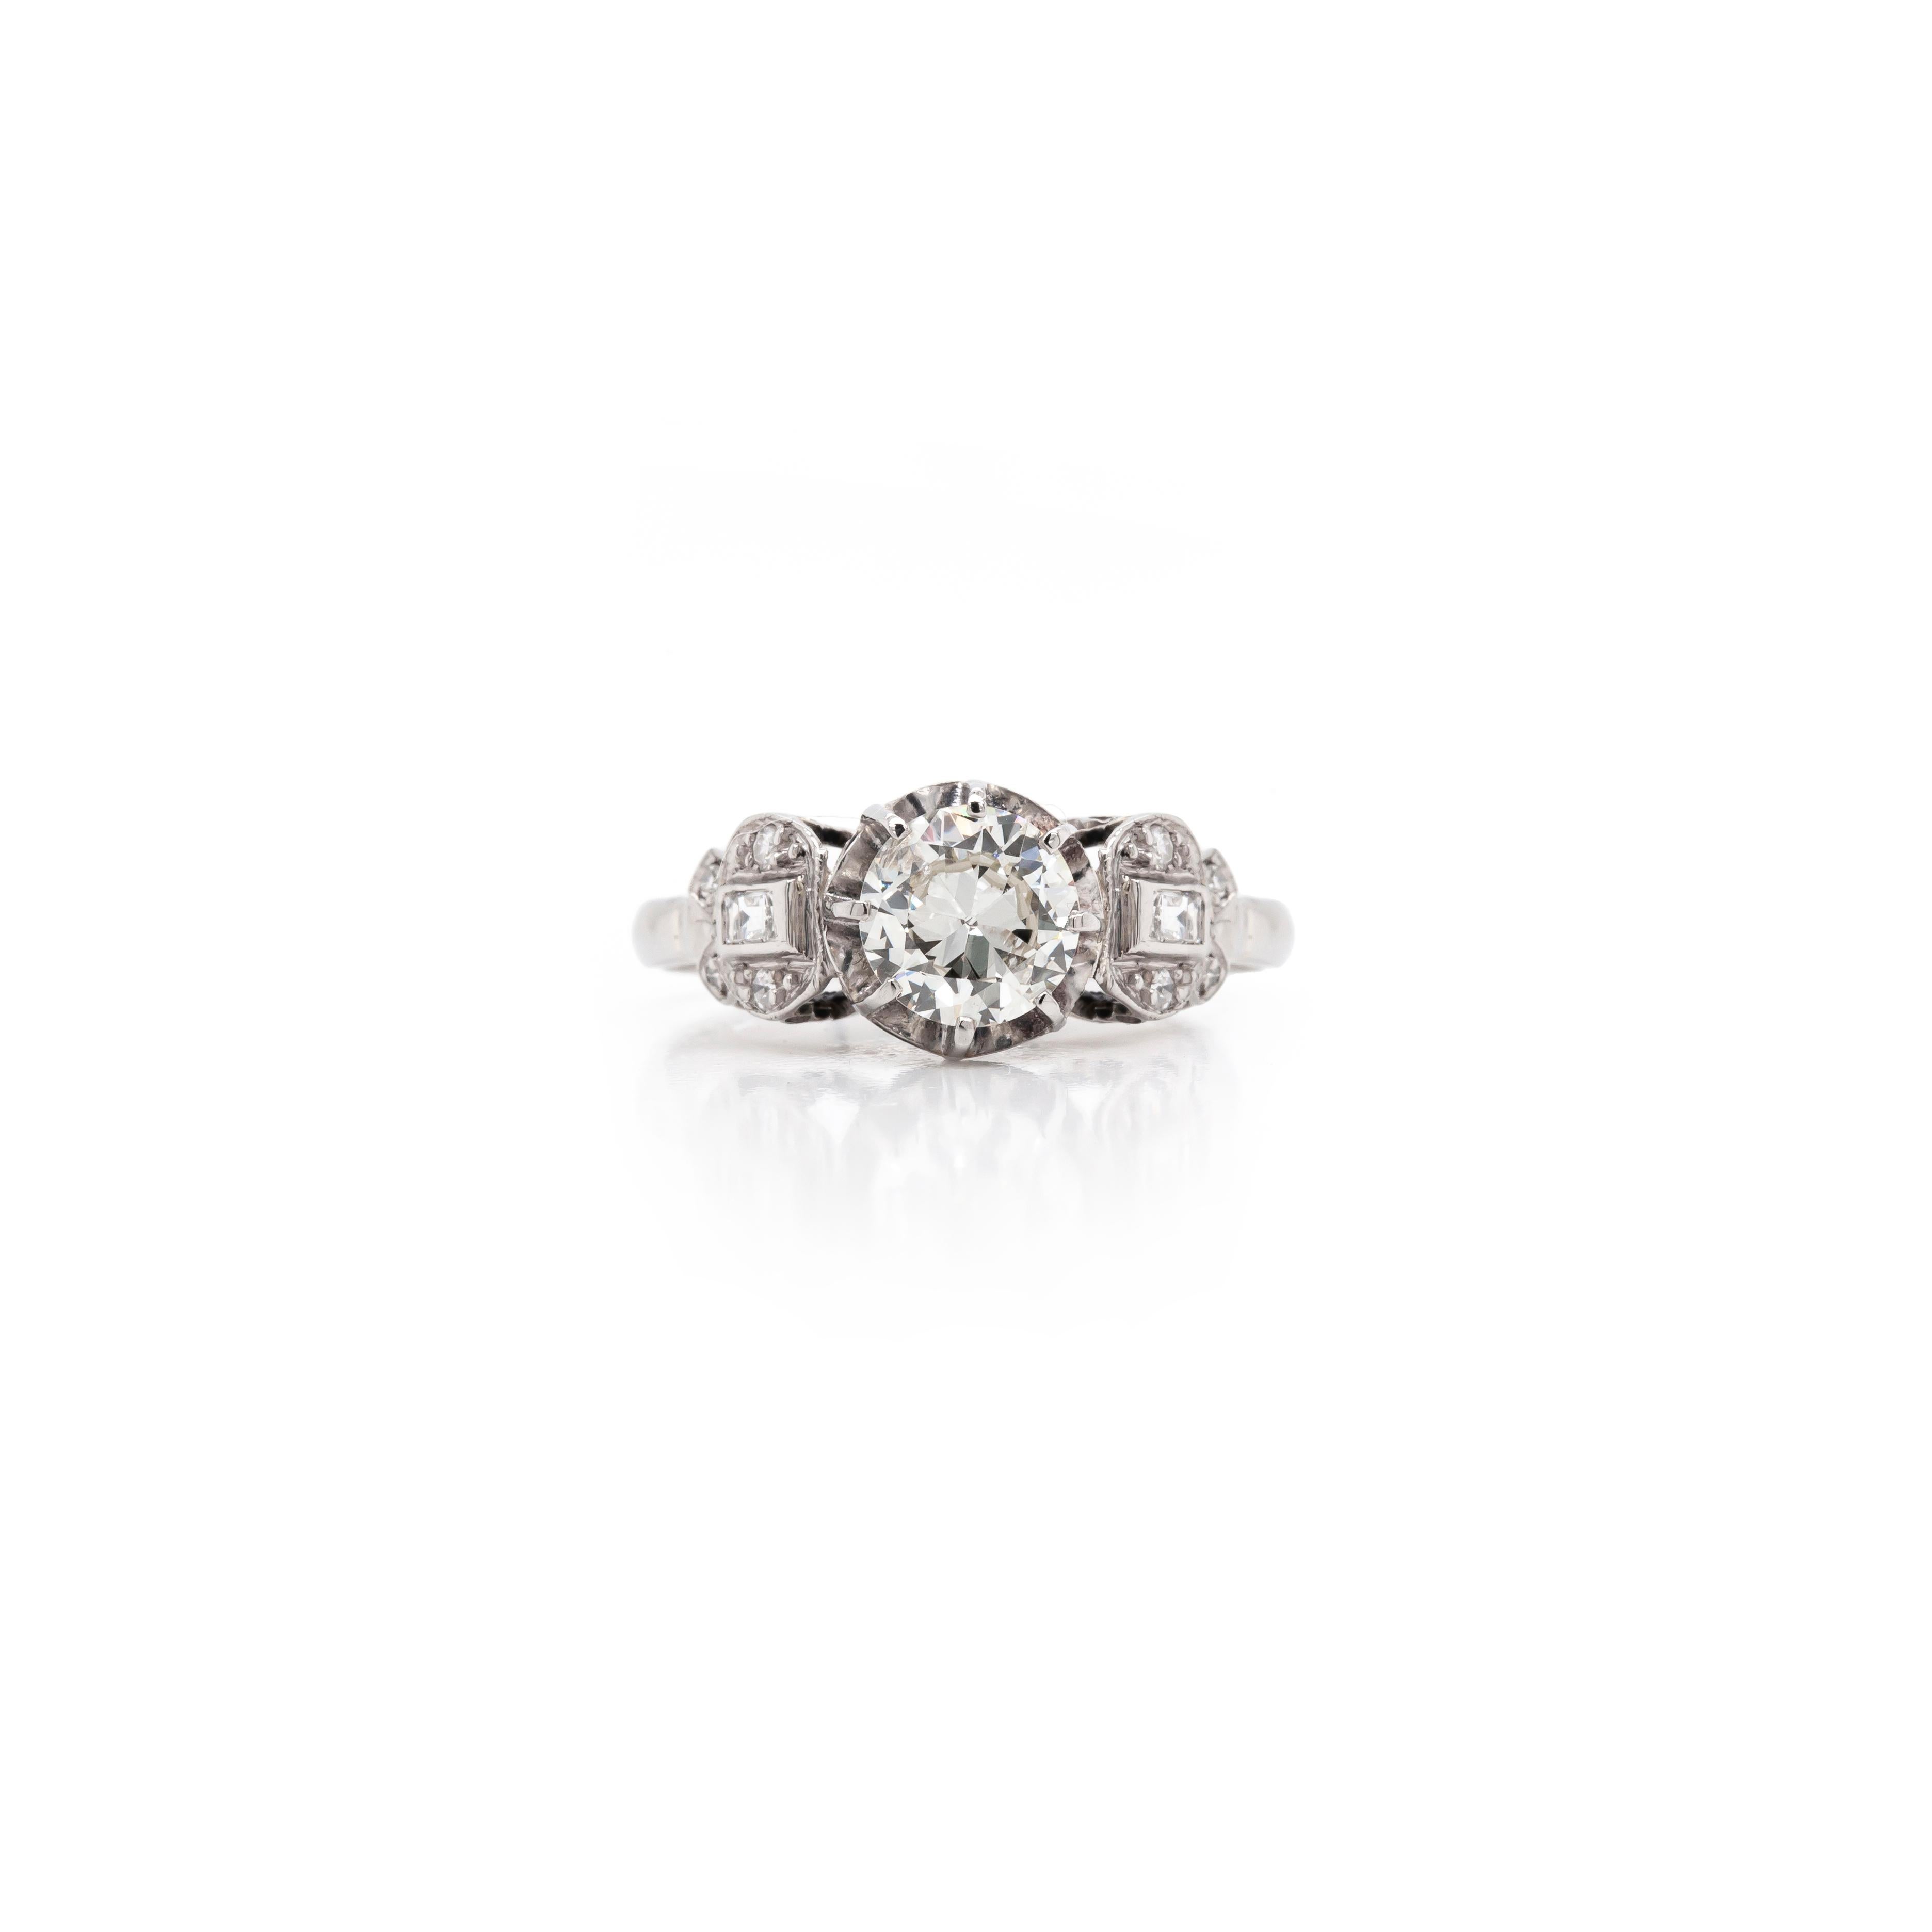 Cette superbe bague de fiançailles des années 1930 présente un magnifique diamant de taille transitionnelle de 1,05 carat au centre, accompagné de part et d'autre d'un diamant de taille baguette serti dans quatre diamants de taille européenne